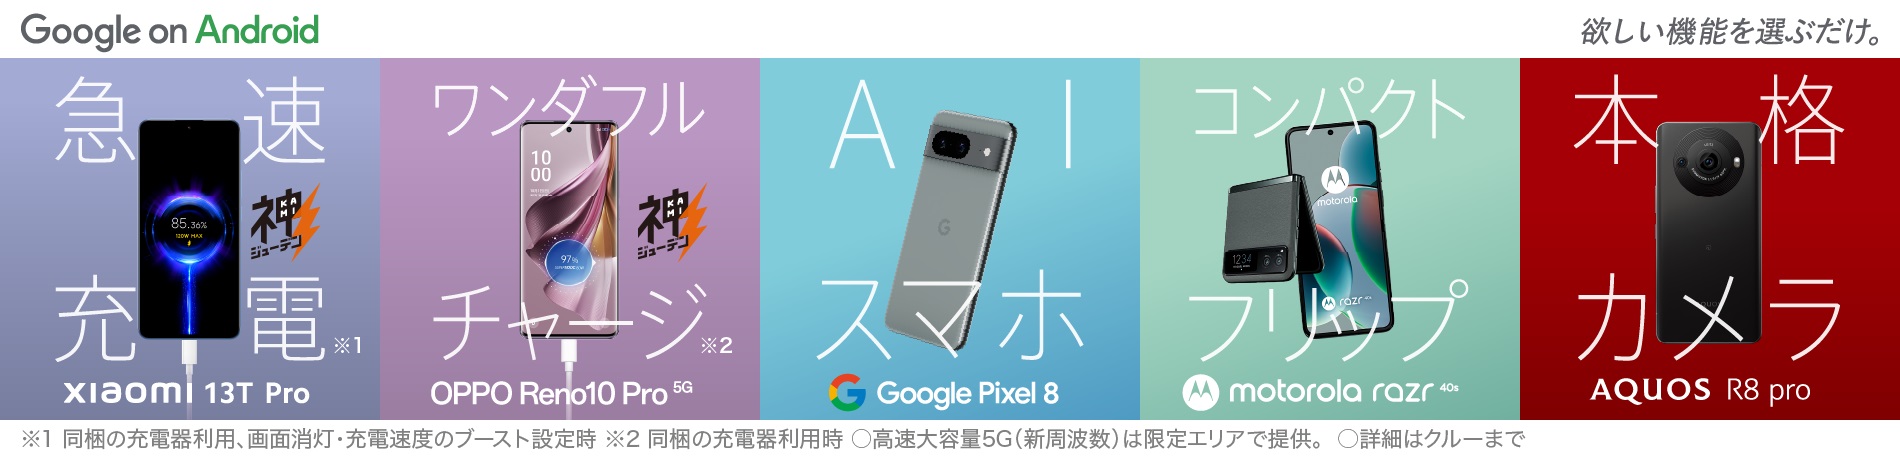 Google Pixel 7a 優れた性能を、うれしい価格で。 AQUOS R8 pro 夜景も美しく、プロ監修の本格カメラ。 xiaomi 12T Pro たった19分※で100%充電！ XPERIA 10 V "聴く"も"観る"もリッチに。 with Google Googeのアプリ・セキュリティで最高の体験を Androidで ※同梱の充電器利用、画面消灯・充電速度のブースト設定時。2～100%までの最短充電時間。使用環境などにより変動。